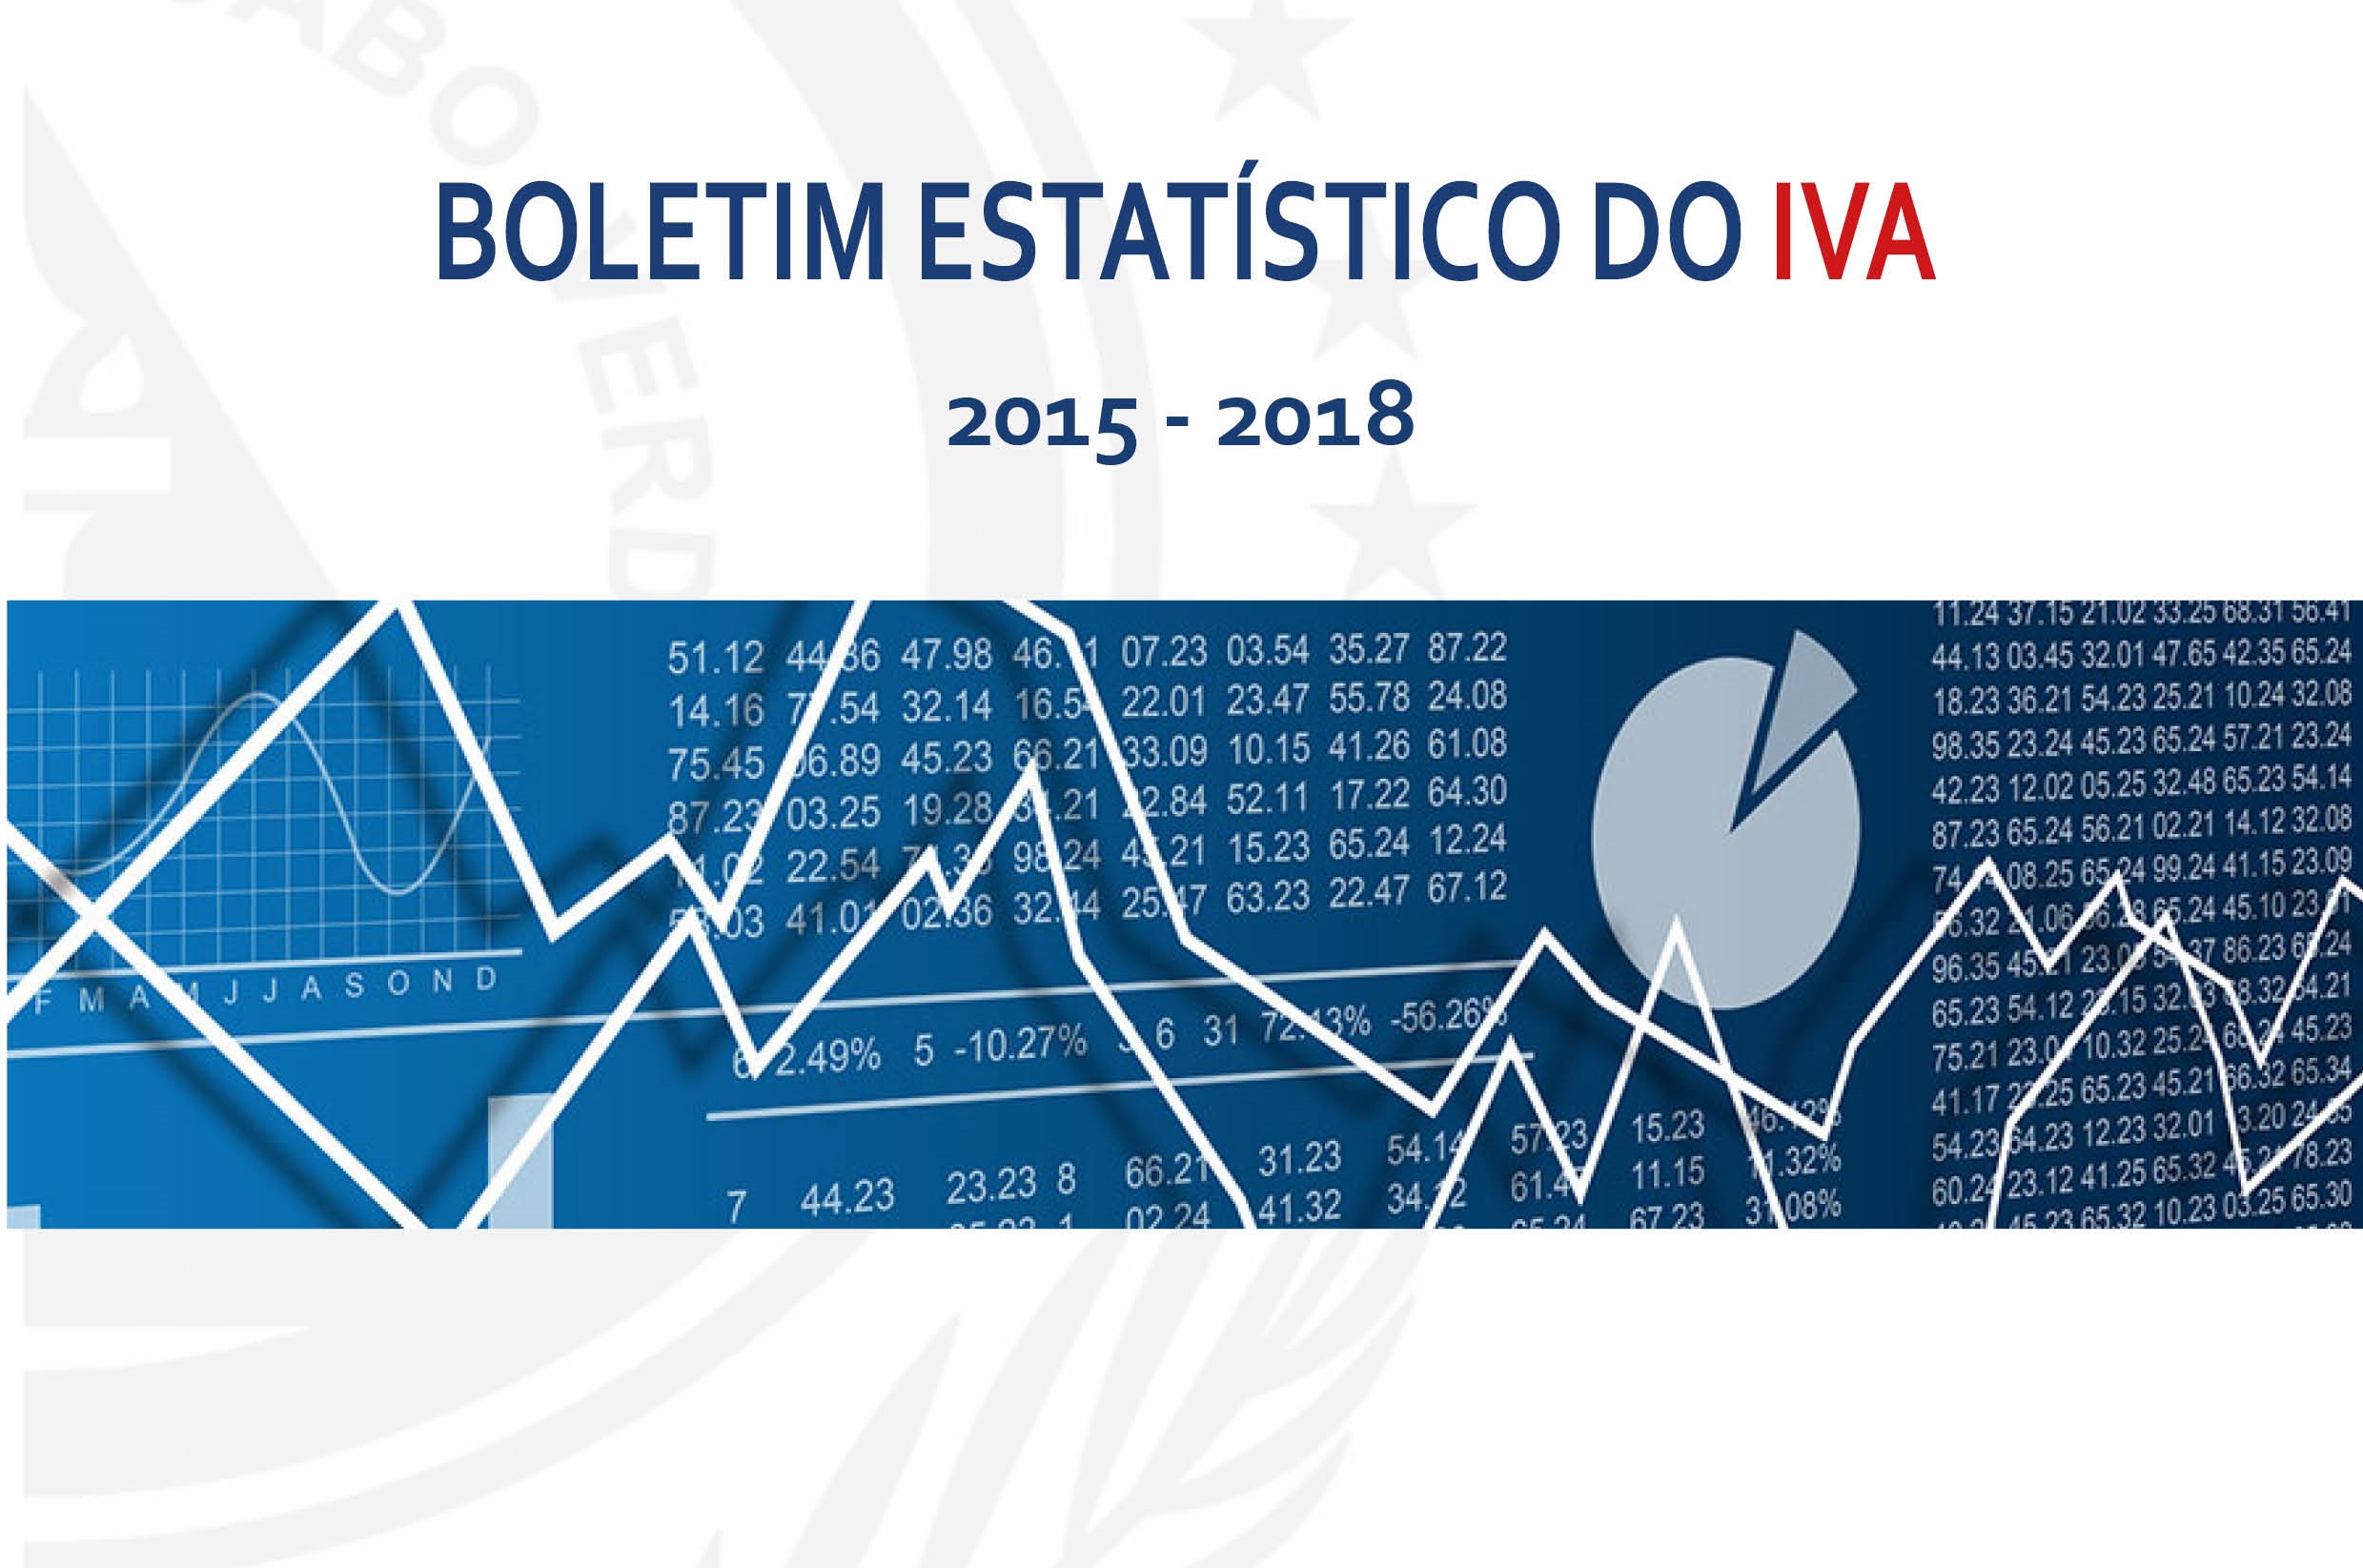 Boletim Estatístico do IVA já está disponível para consulta - Asset Display  Page - Direção Nacional das Receitas de Estado - Ministério das Finanças